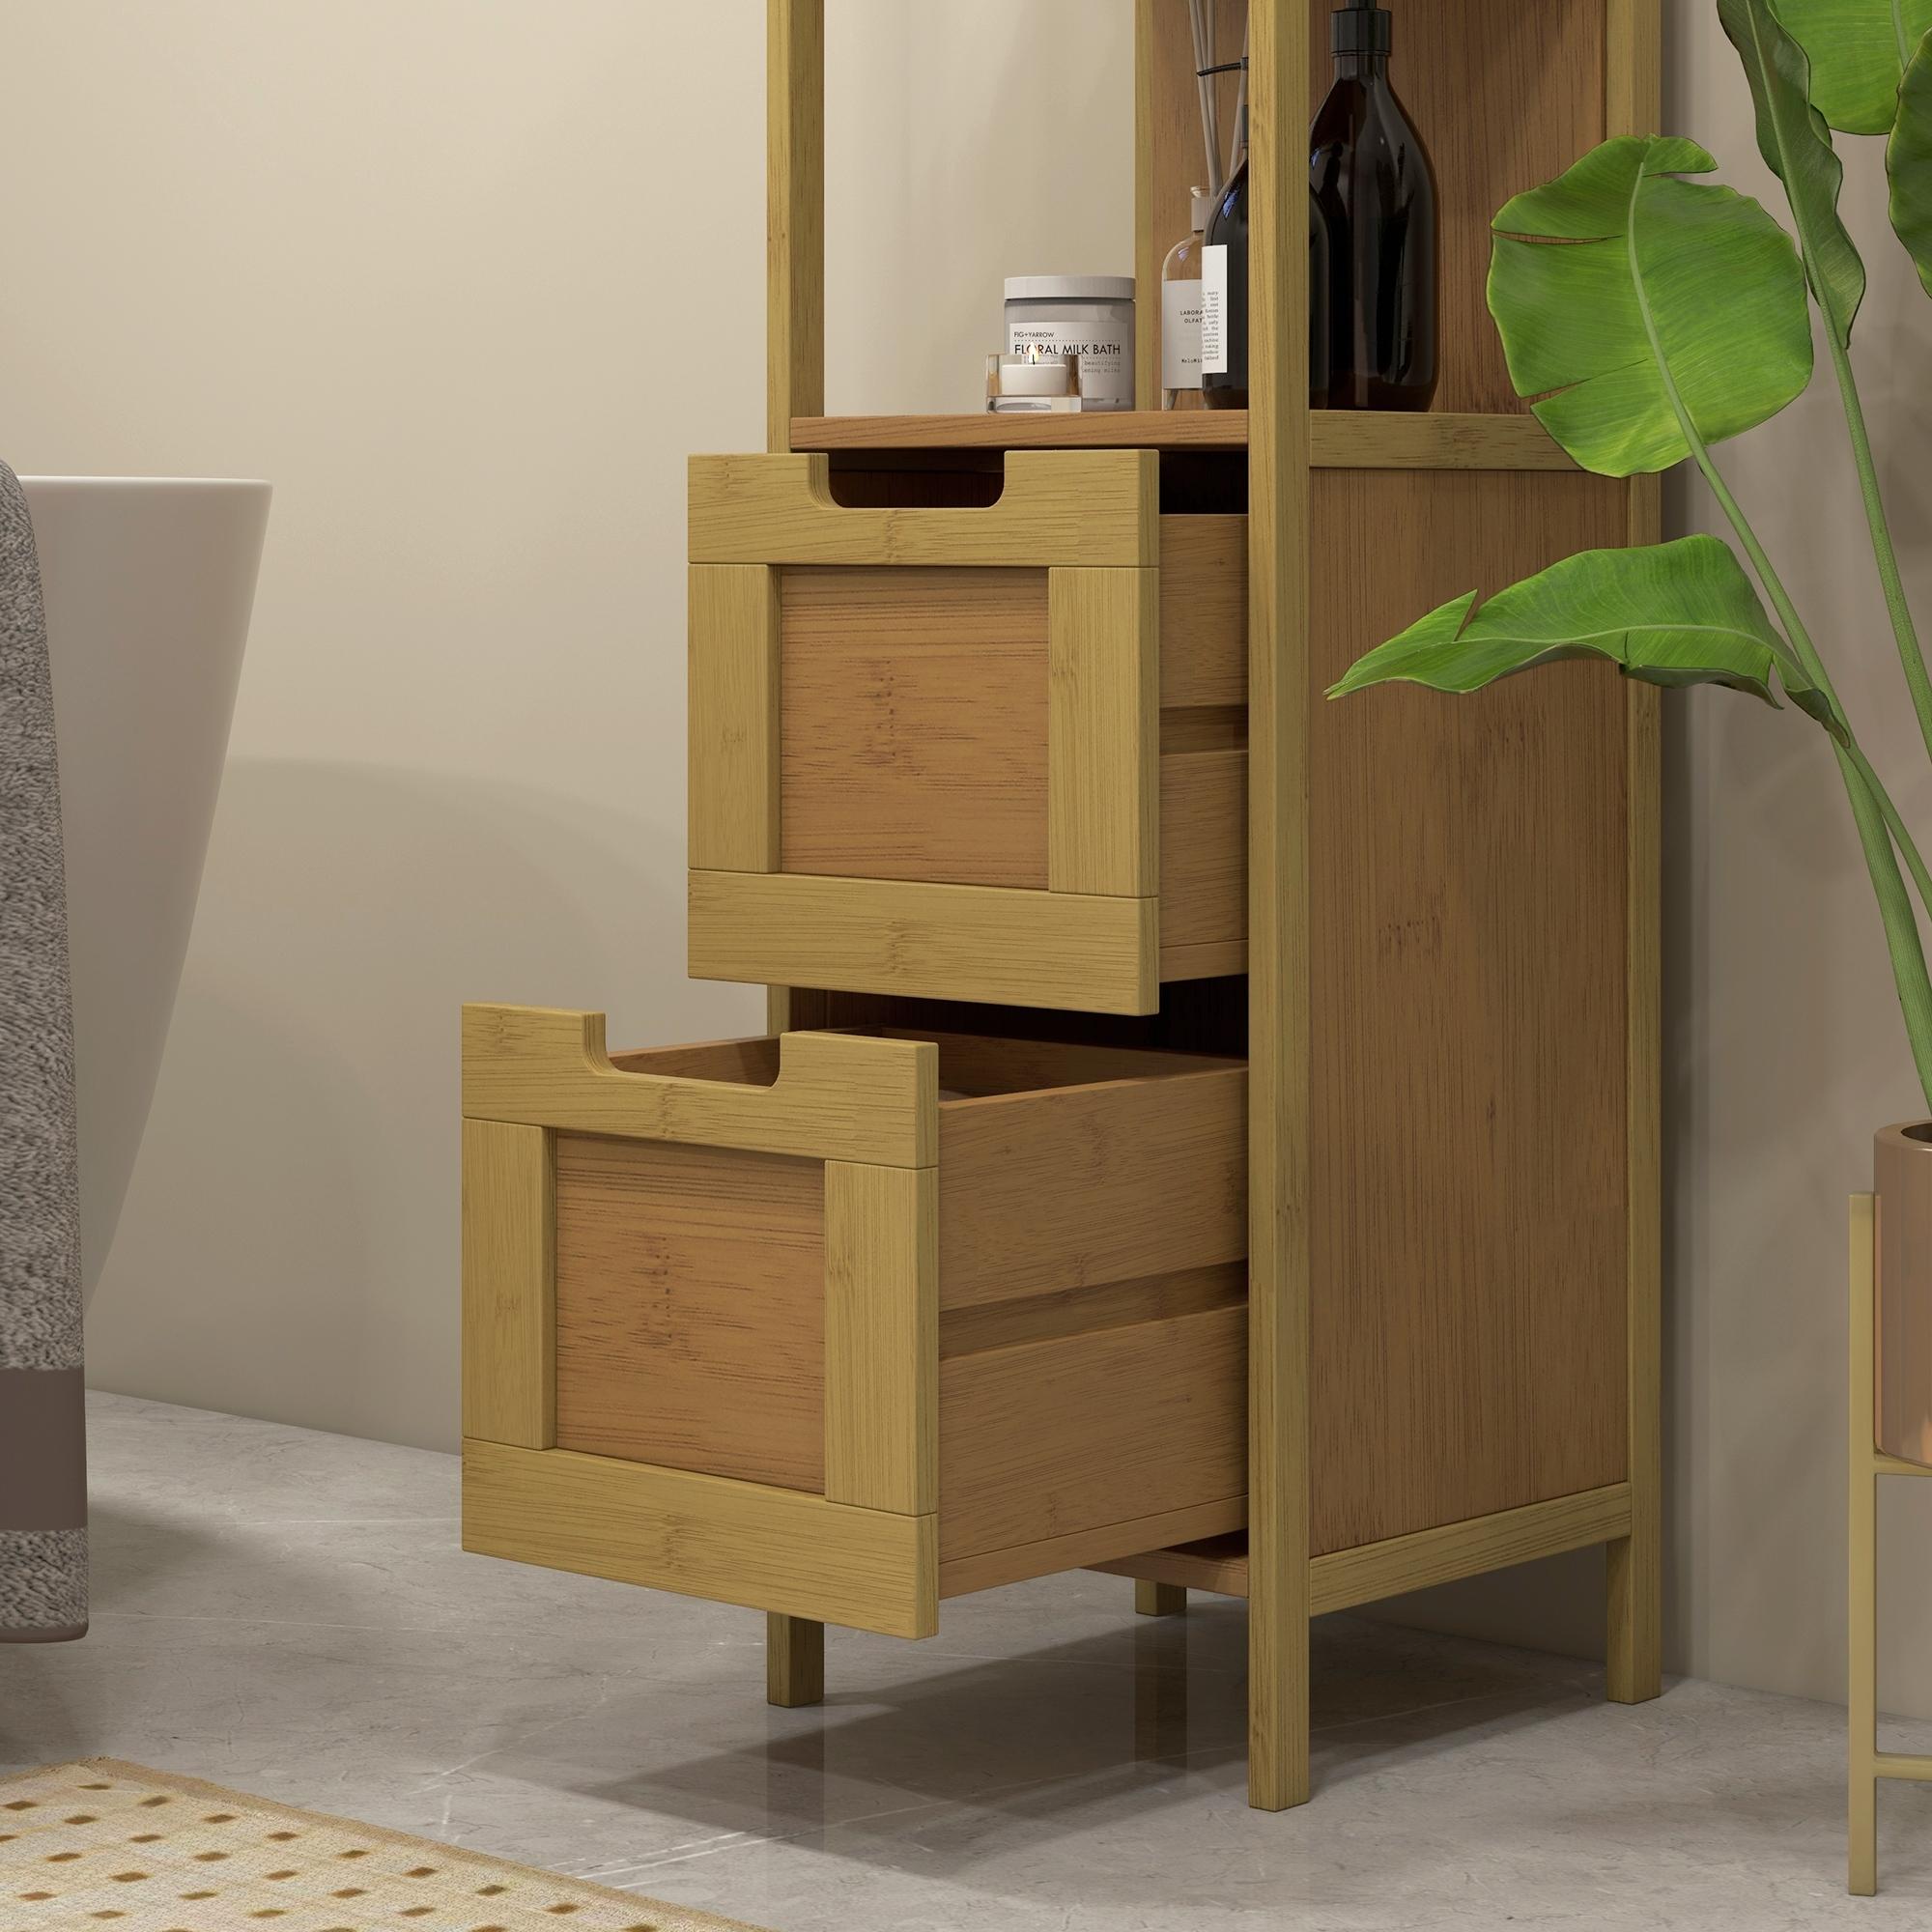 Meuble colonne rangement salle de bain style cosy dim. 30L x 30l x 144H cm 3 étagères 2 tiroirs bambou MDF aspect bois clair